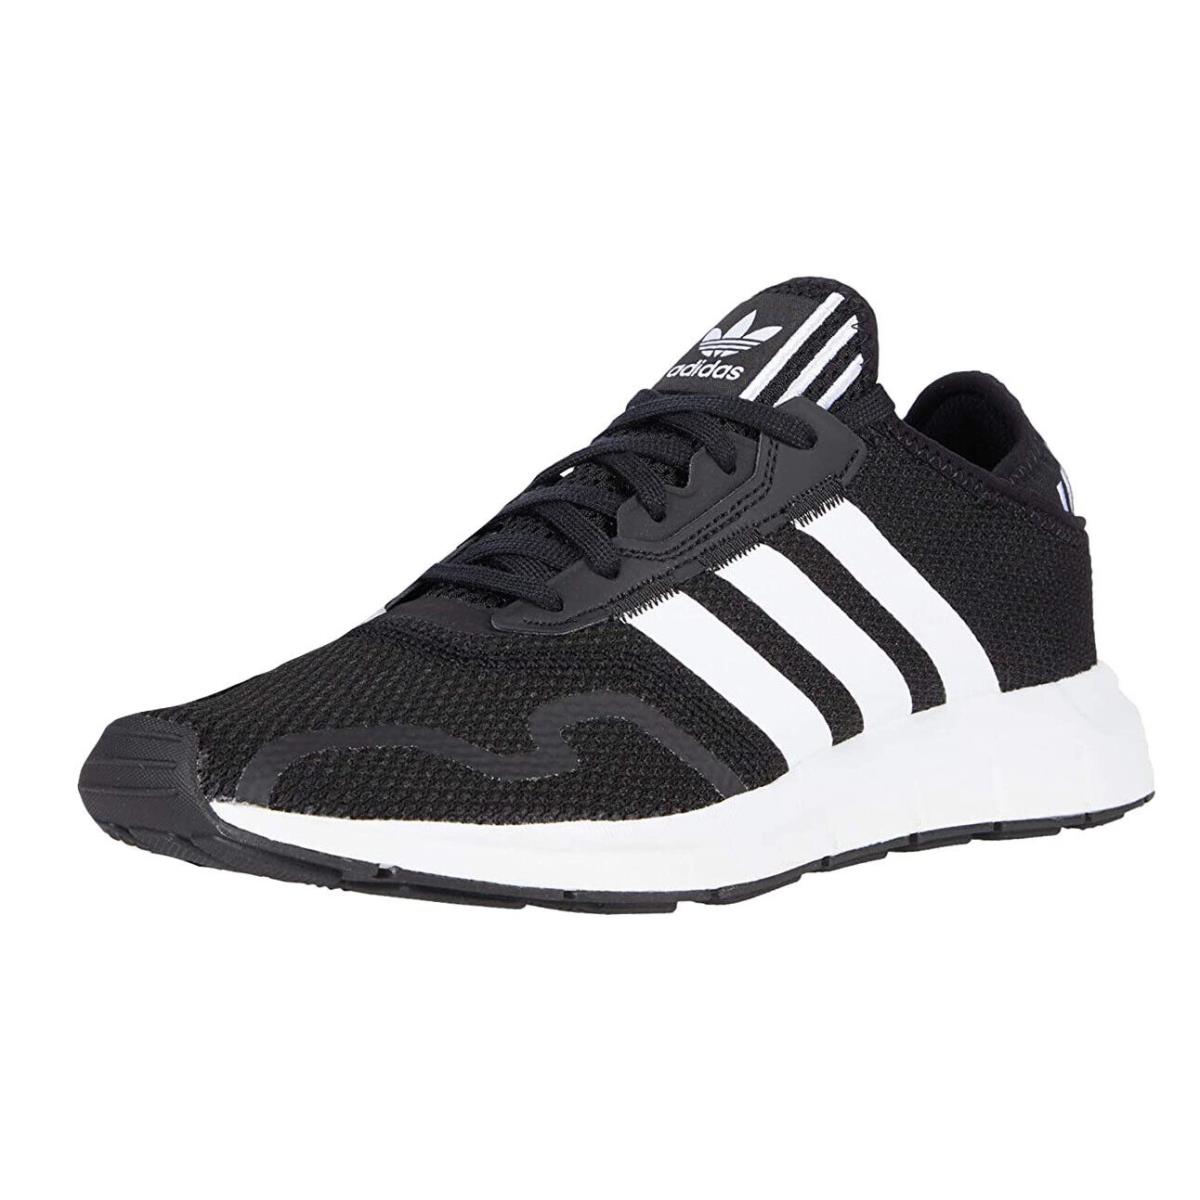 Adidas Originals Swift Run X Men Sneakers Sz.11.5 Sz. 13 - Core Black